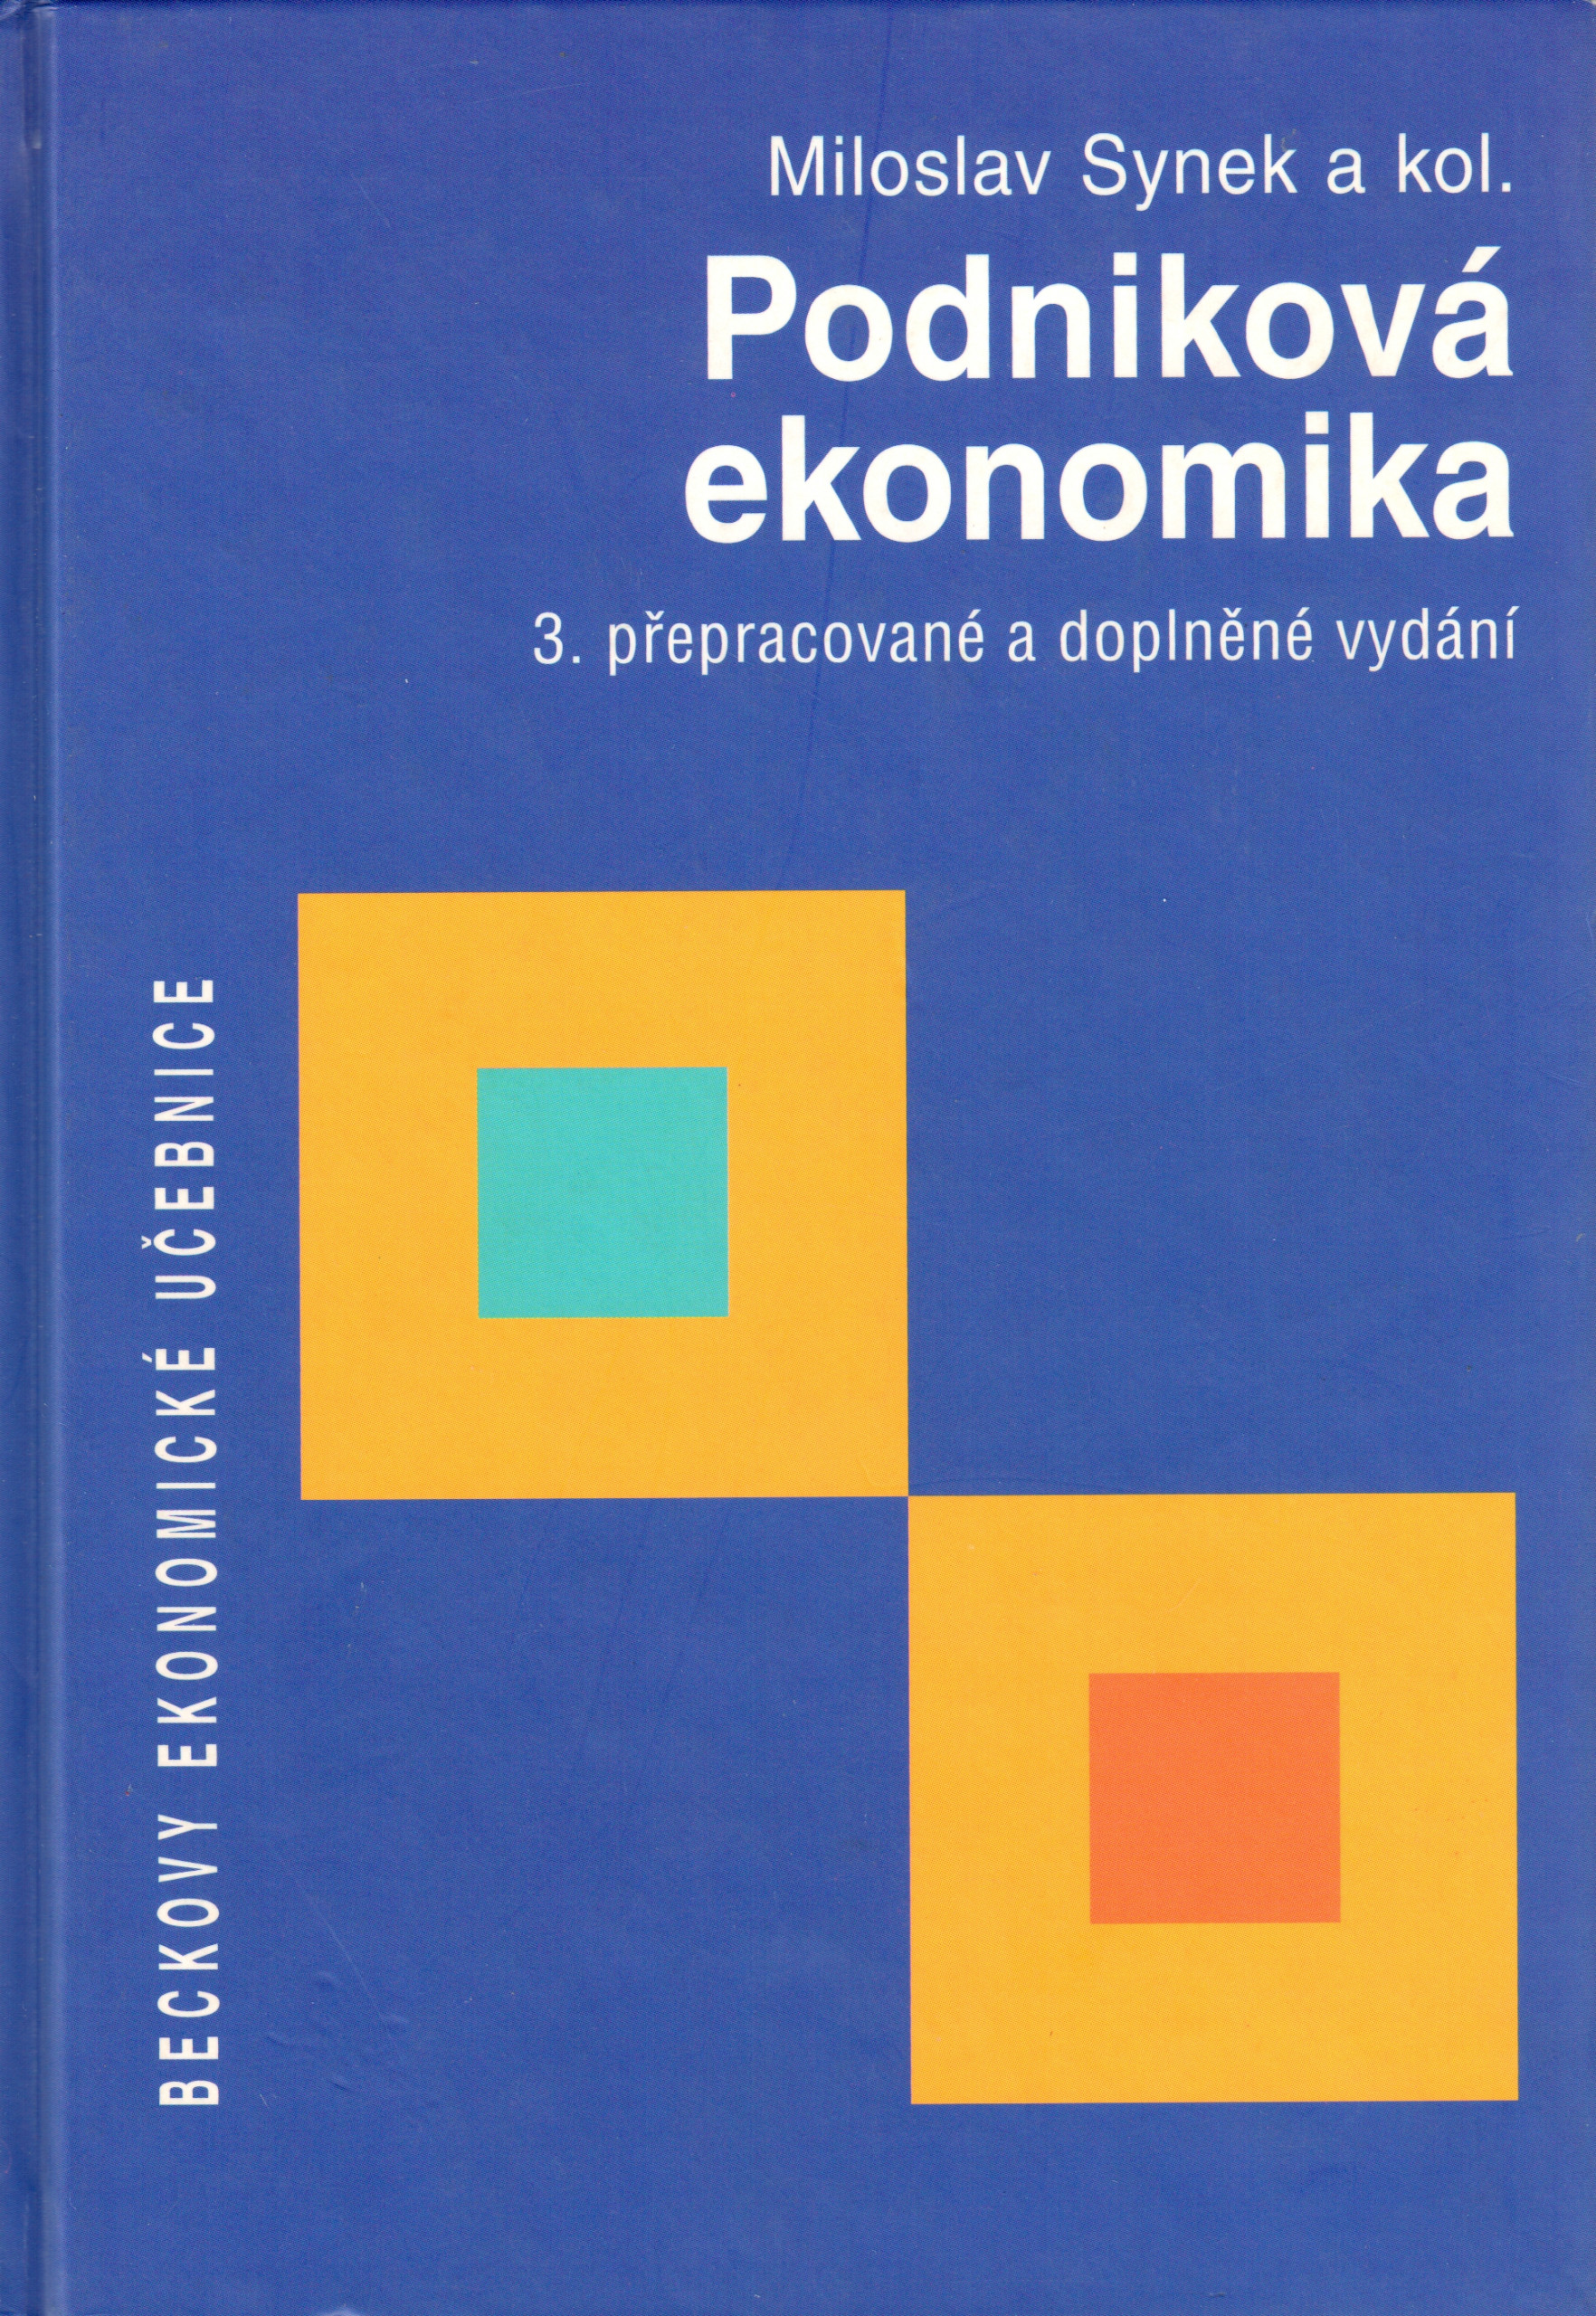 Podniková ekonomika (3. vydání) - Náhled učebnice